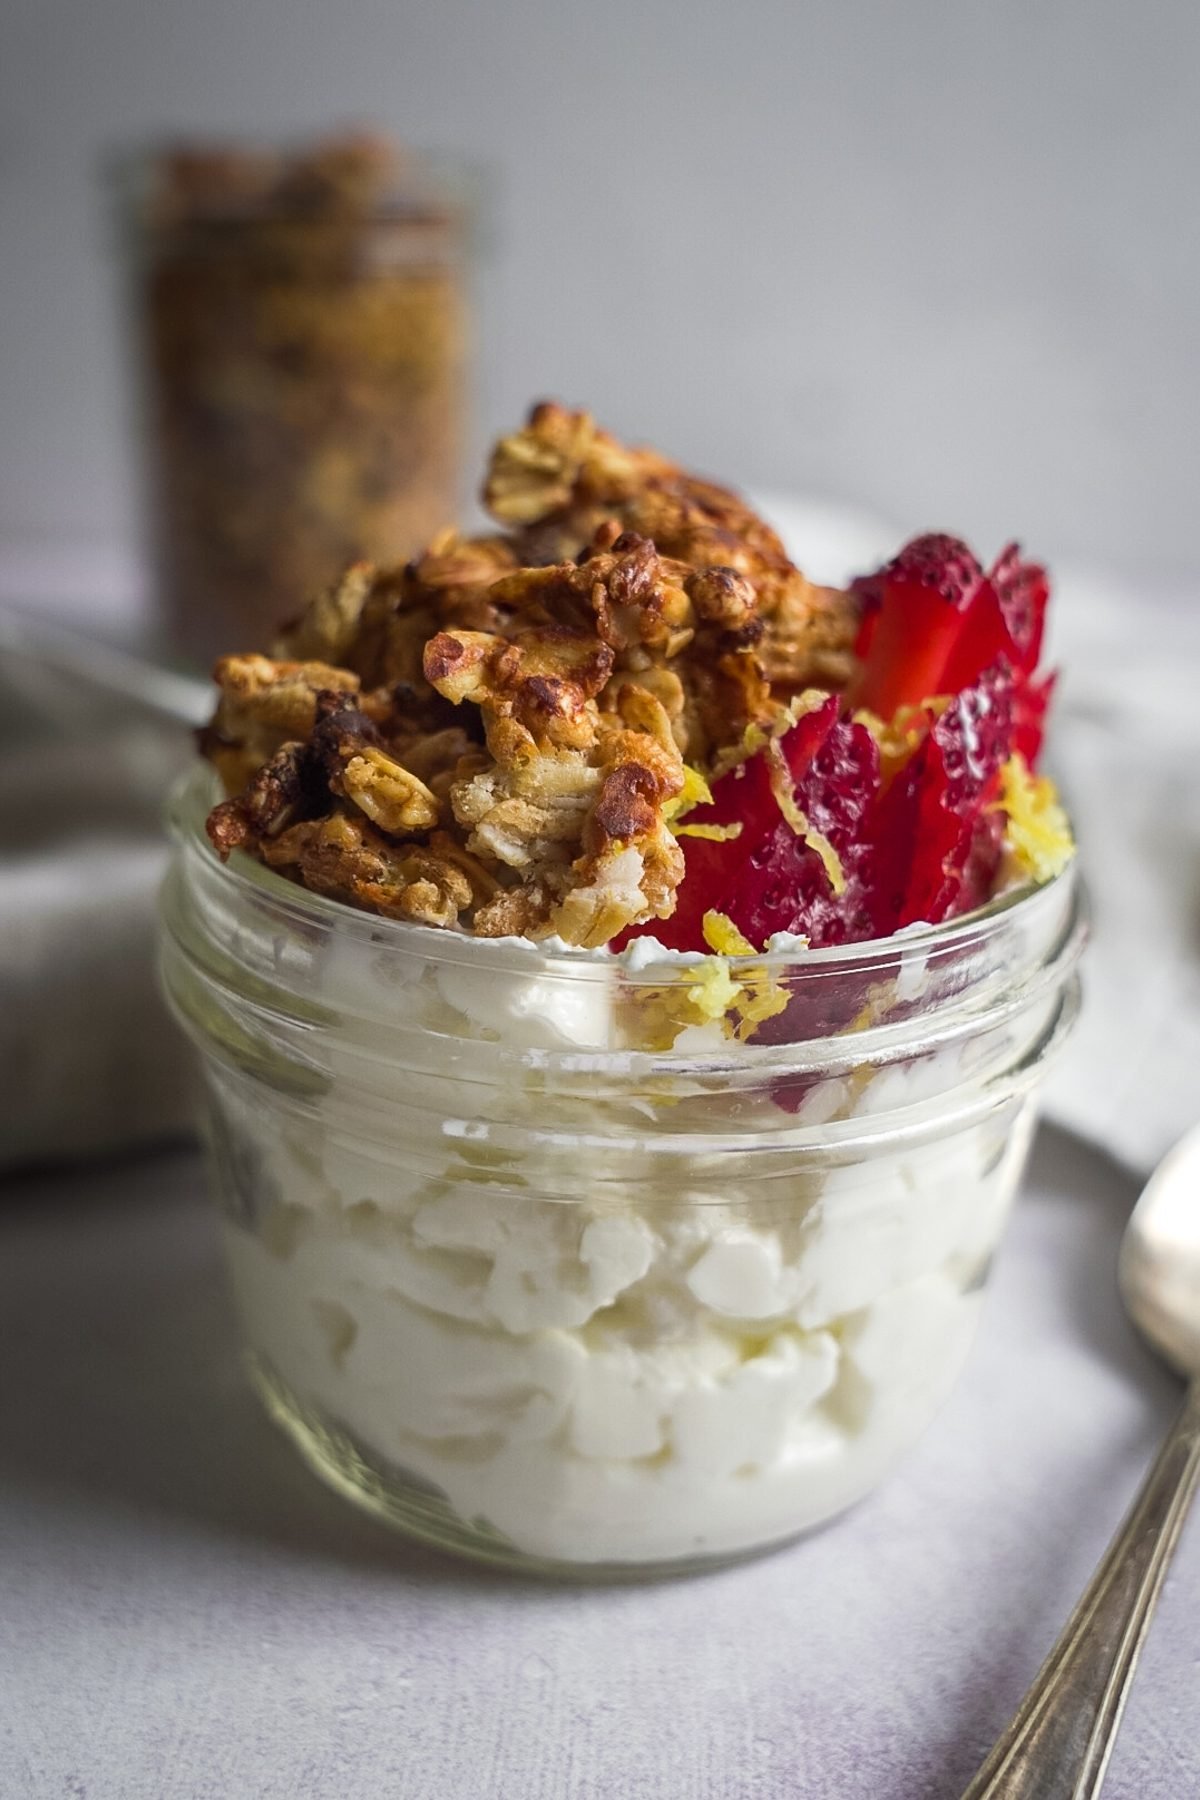 Lemon granola and strawberries atop a jar of yogurt.